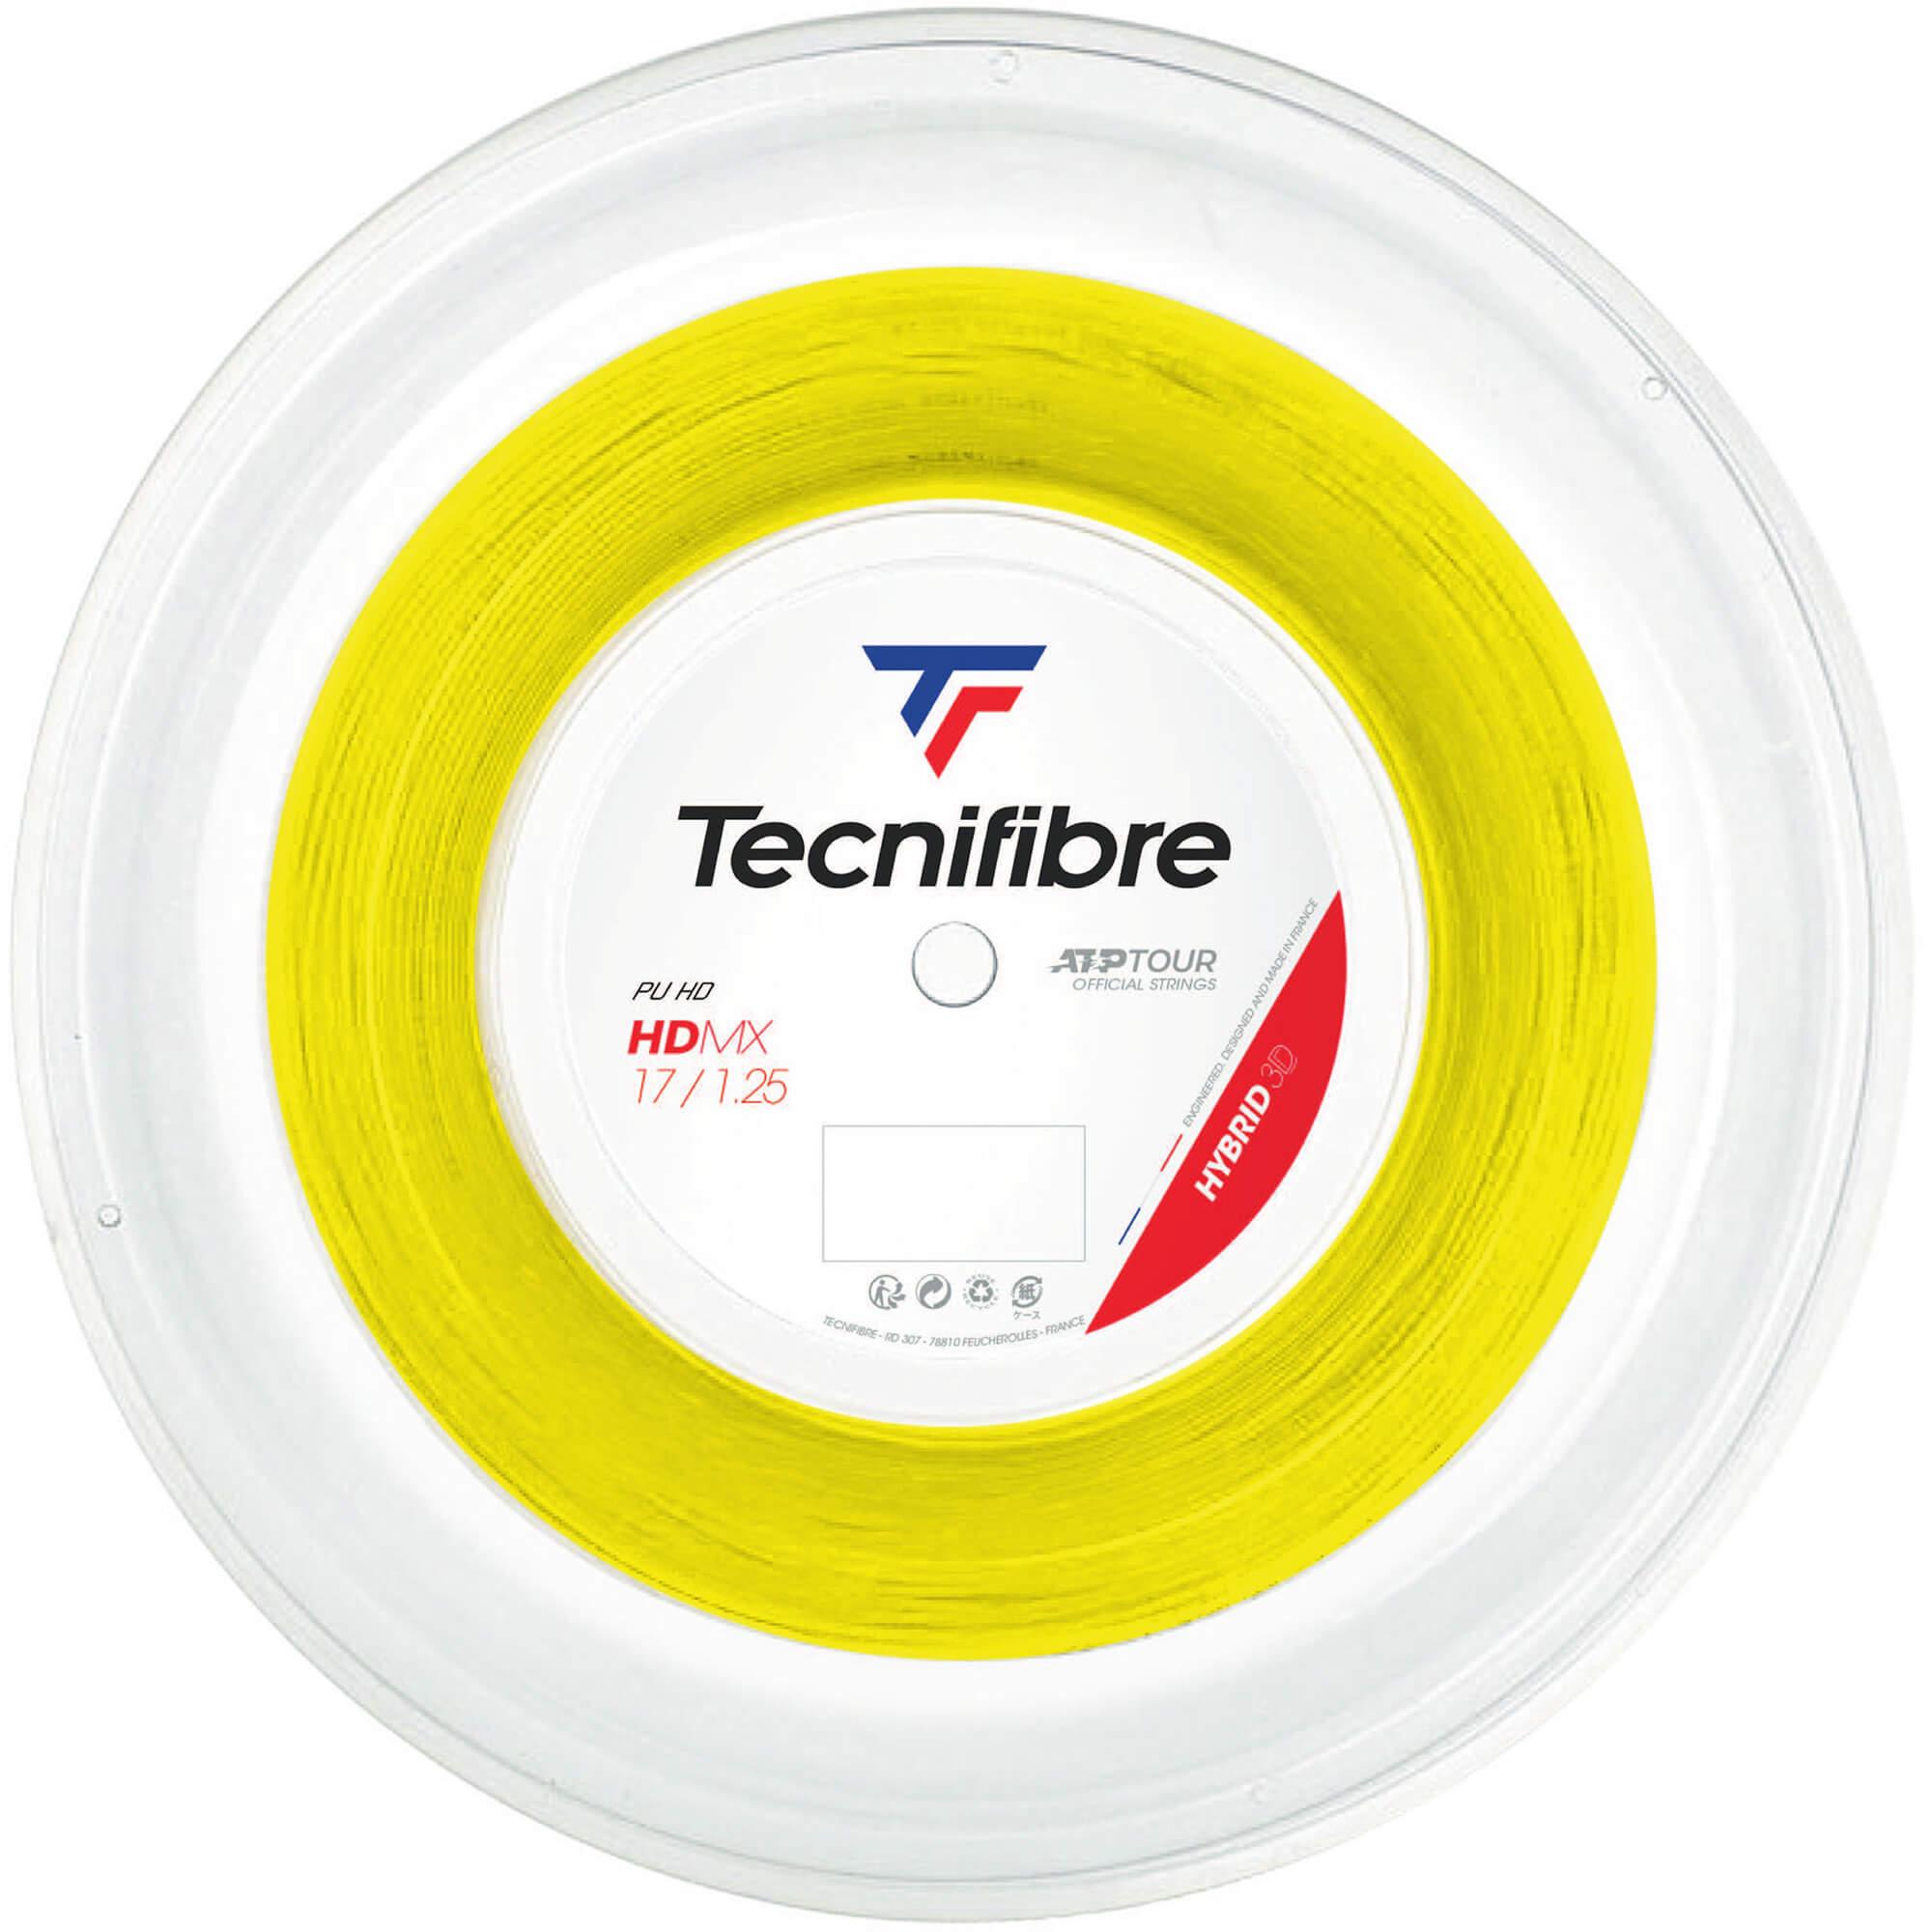 Download Tecnifibre Hdmx 200m Tennis String Reel Yellow Tennisnuts Com Yellowimages Mockups